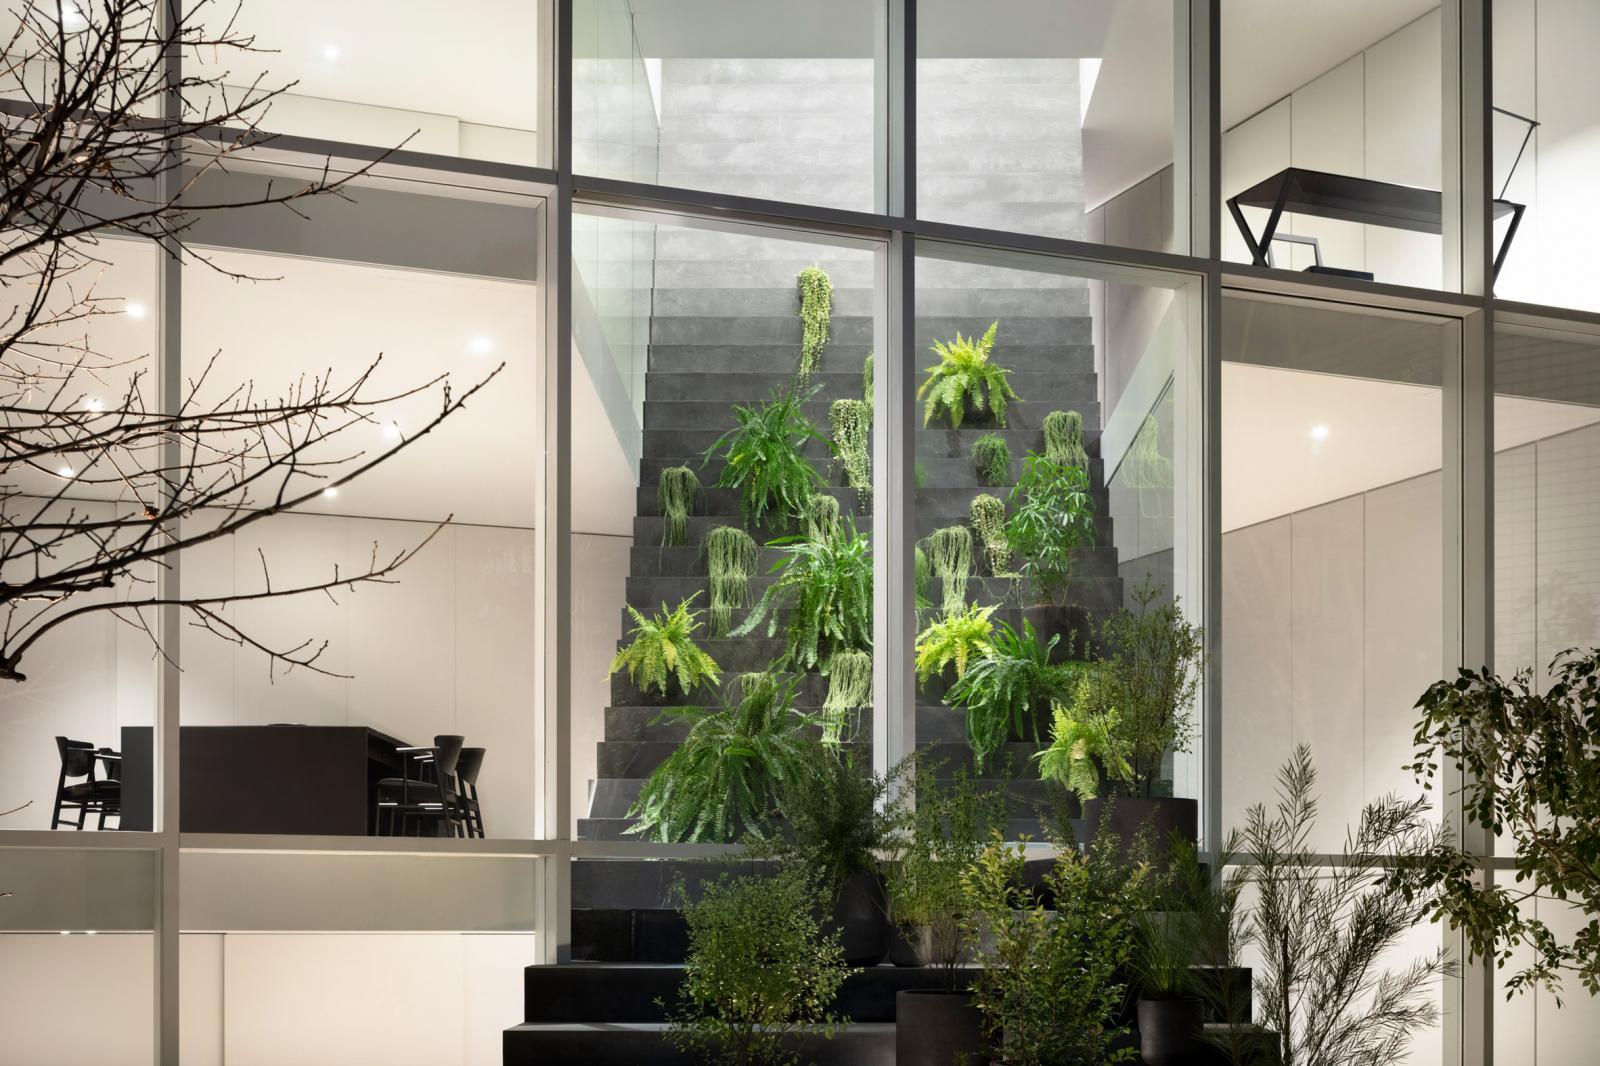 Hình ảnh cận cảnh cầu thang giả trong ngôi nhà, nơi bài trí nhiều cây xanh